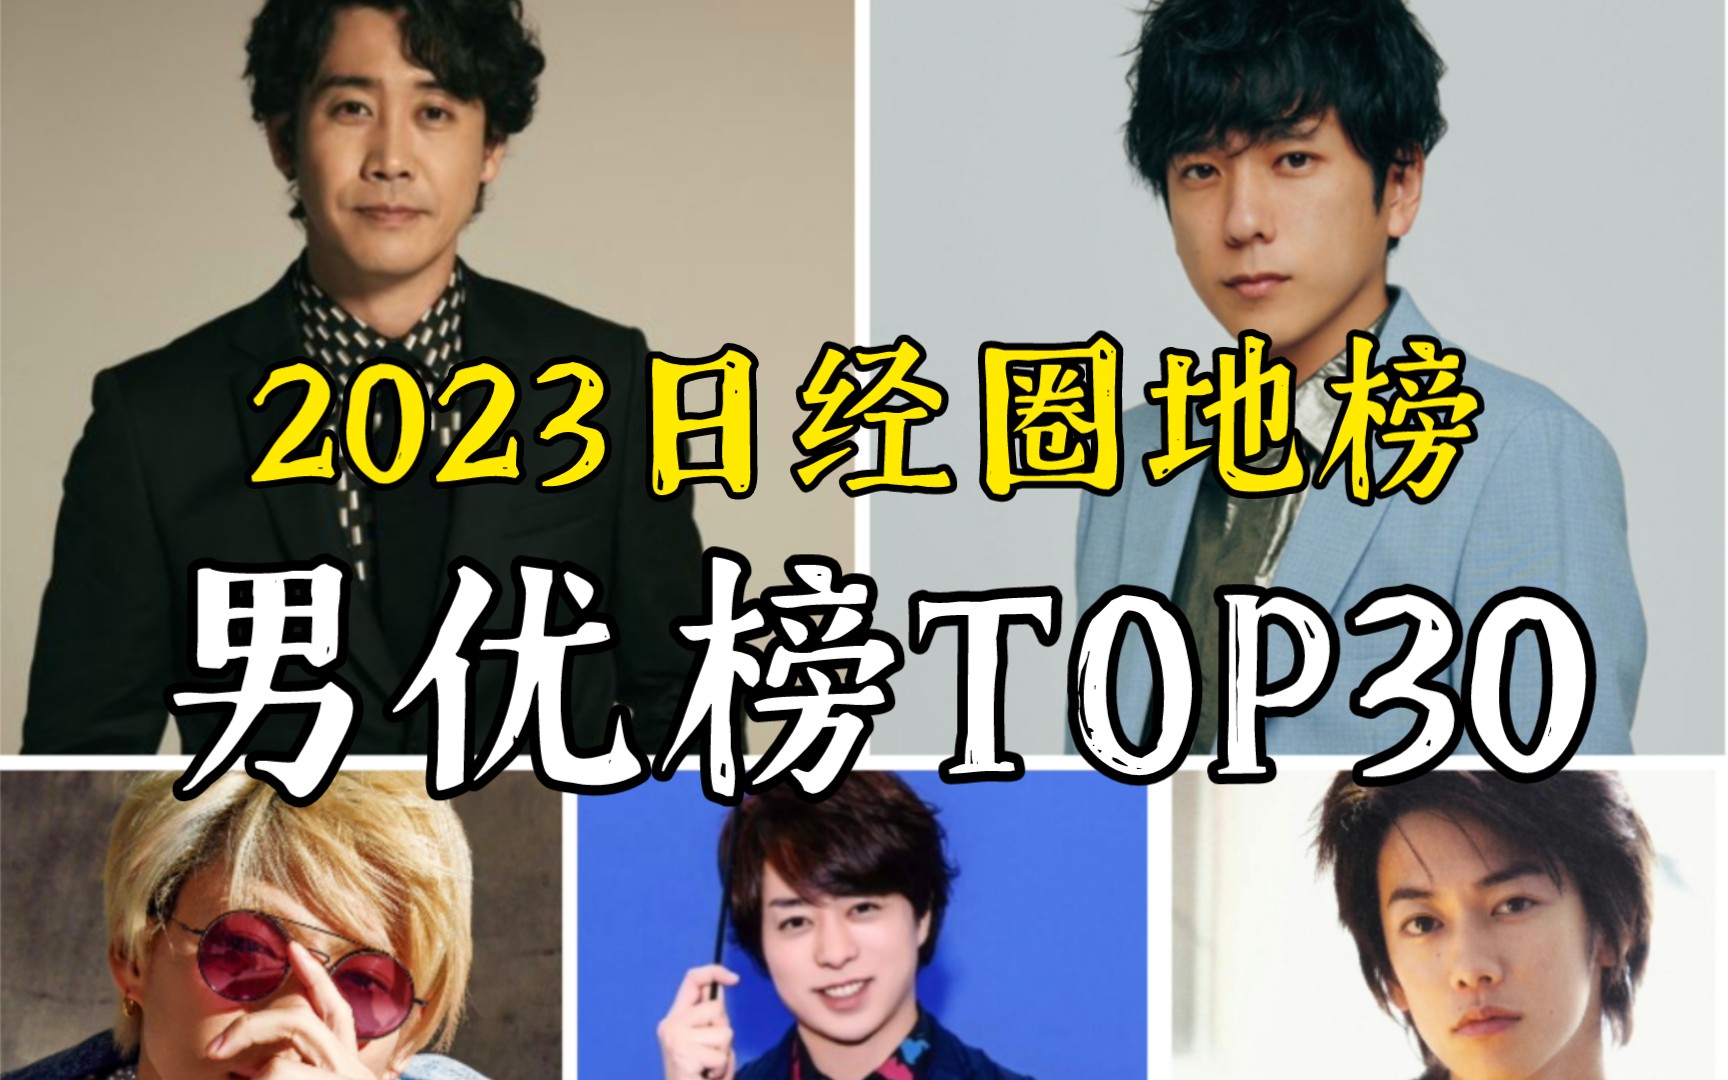 【一年一度】2023日经圈地榜 男优综合排名TOP30